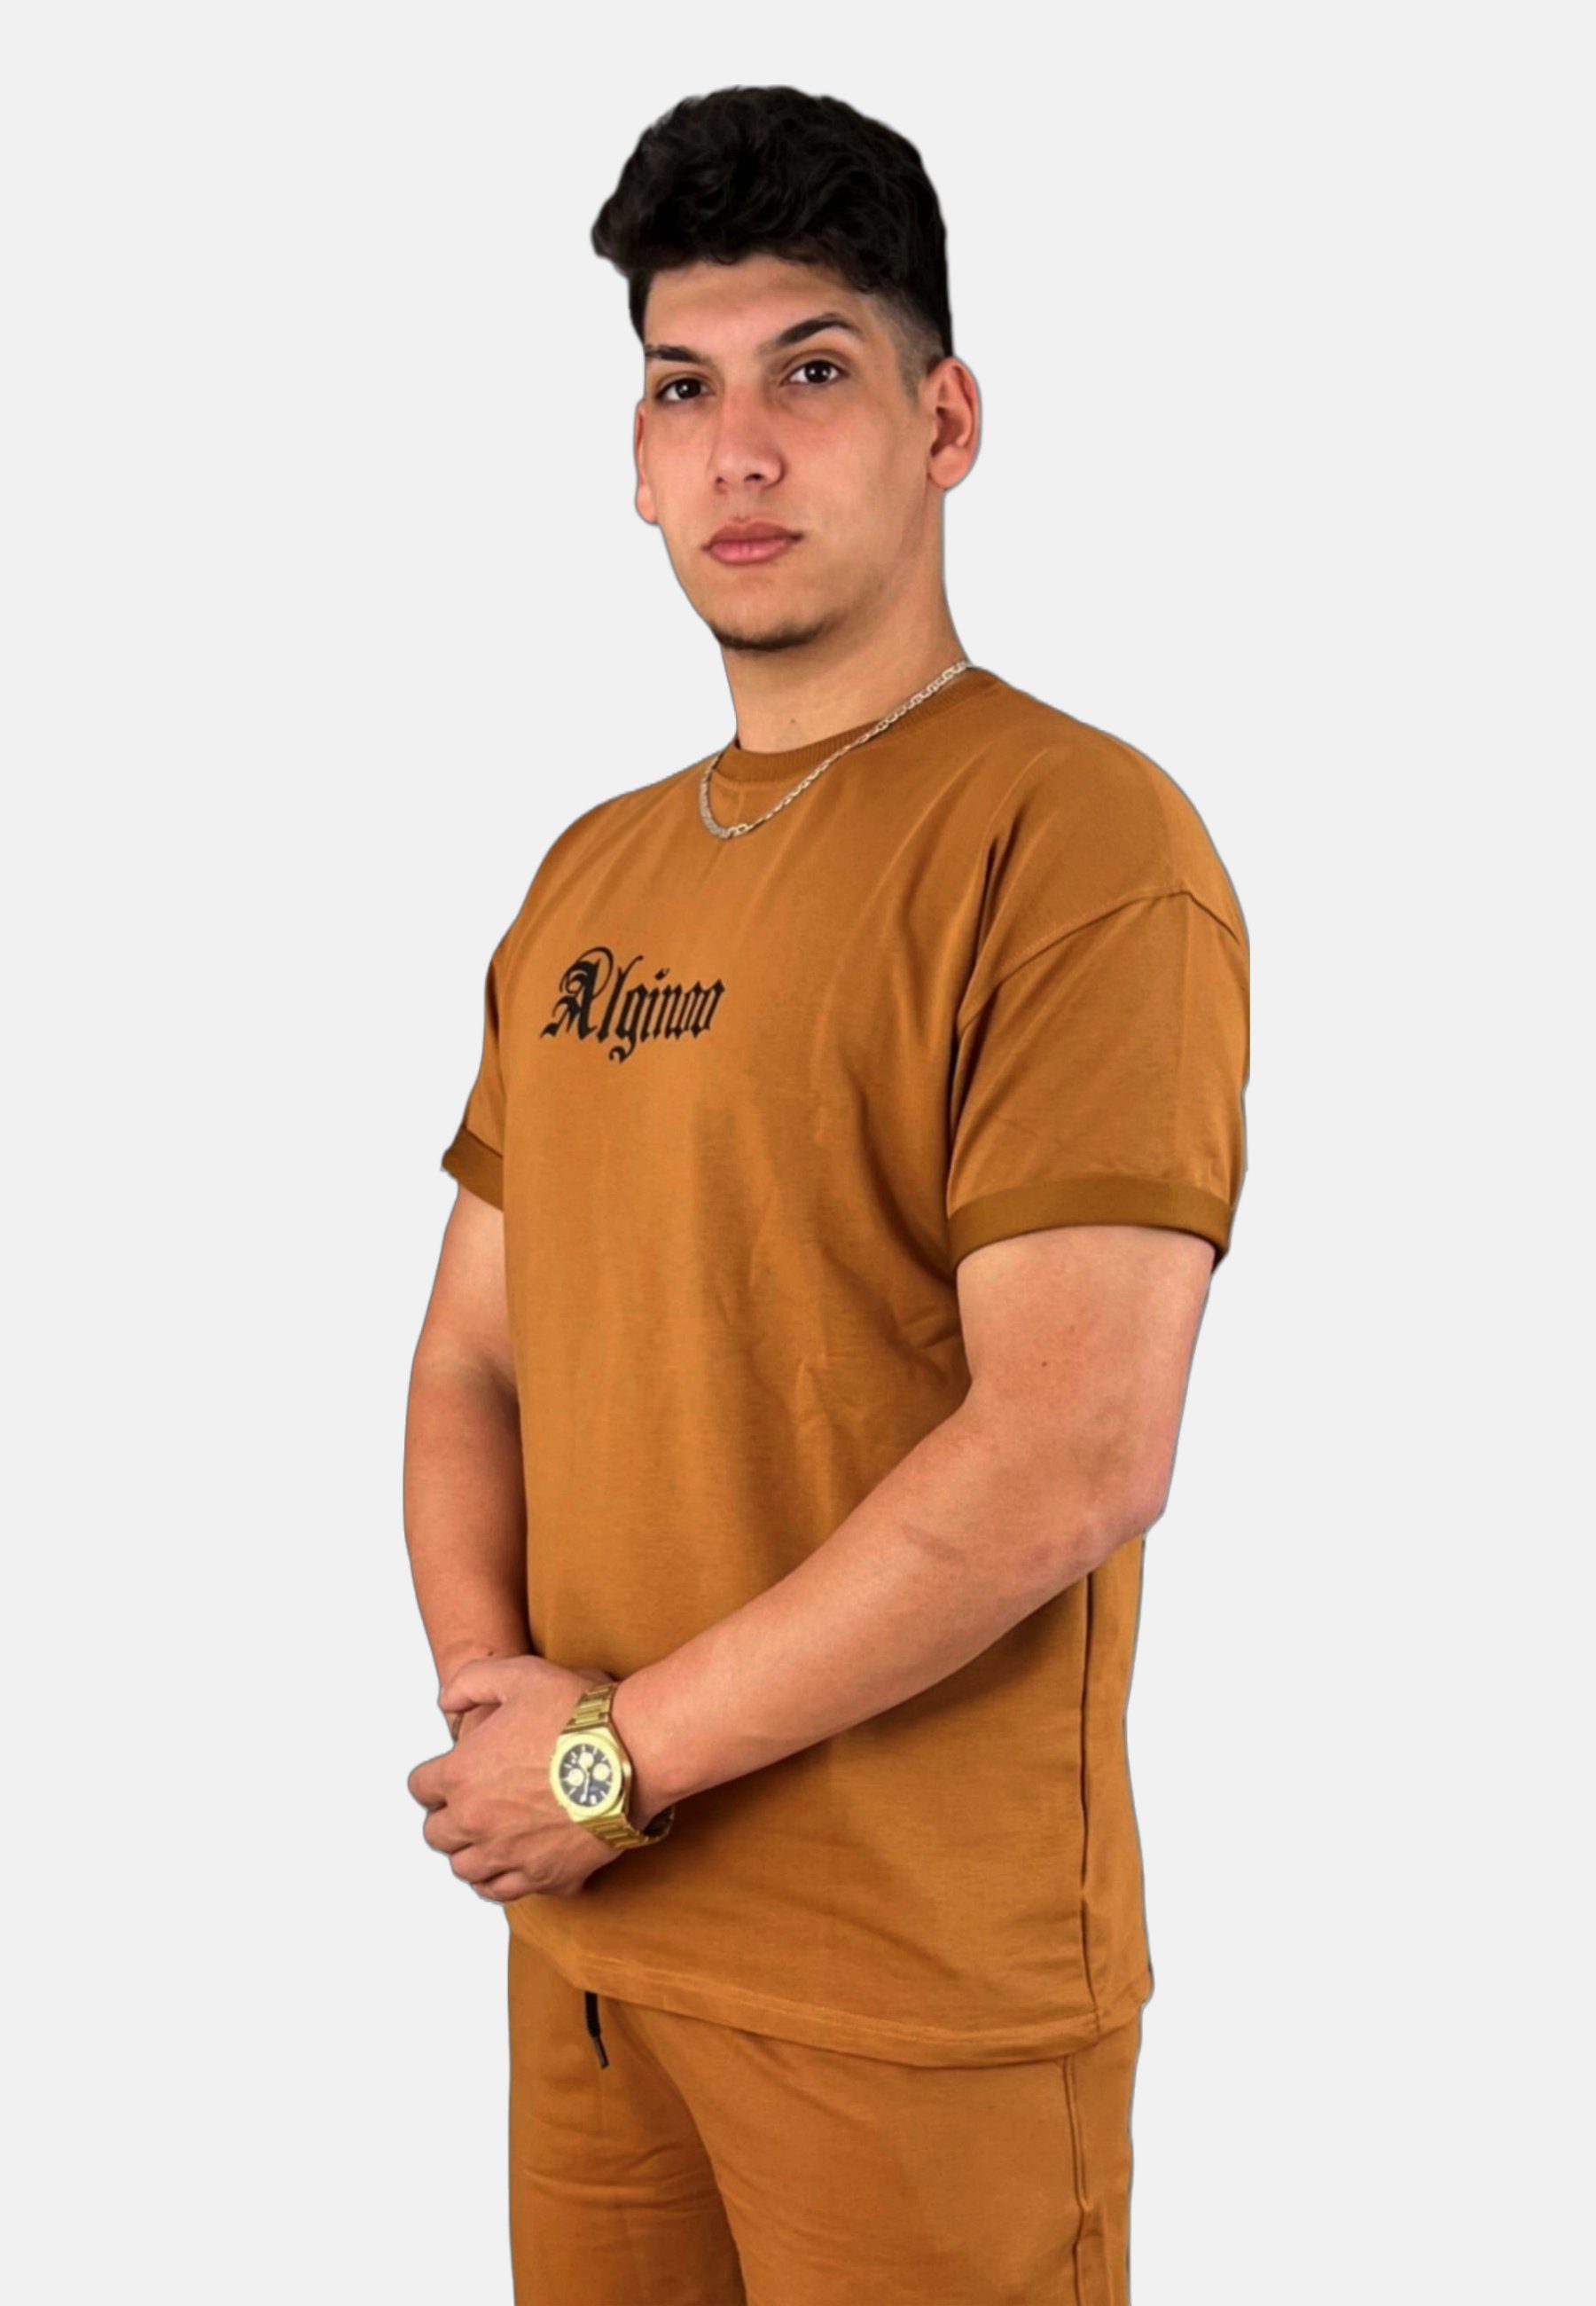 ALGINOO Print Beige T-Shirt T-Shirt -